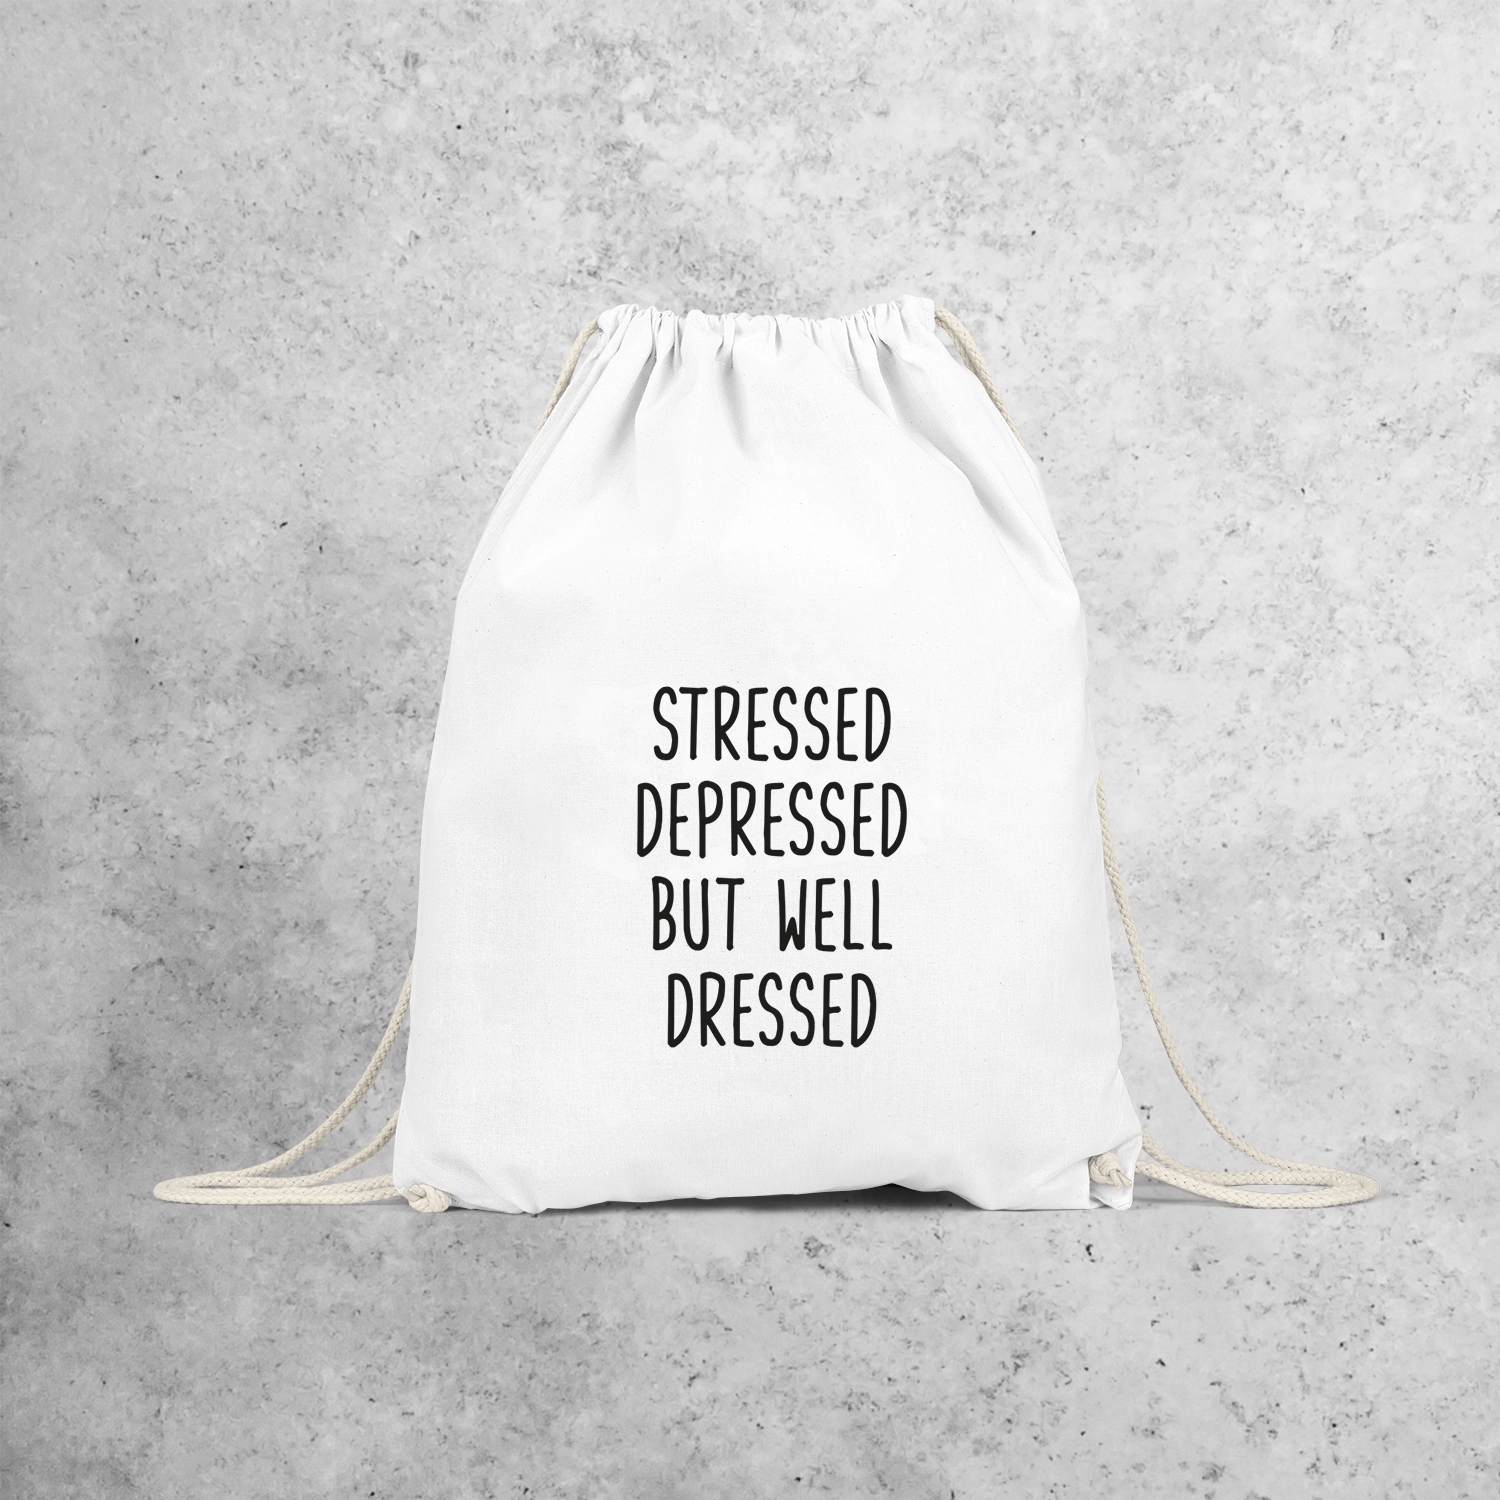 'Stressed, depressed, but wel dressed' backpack